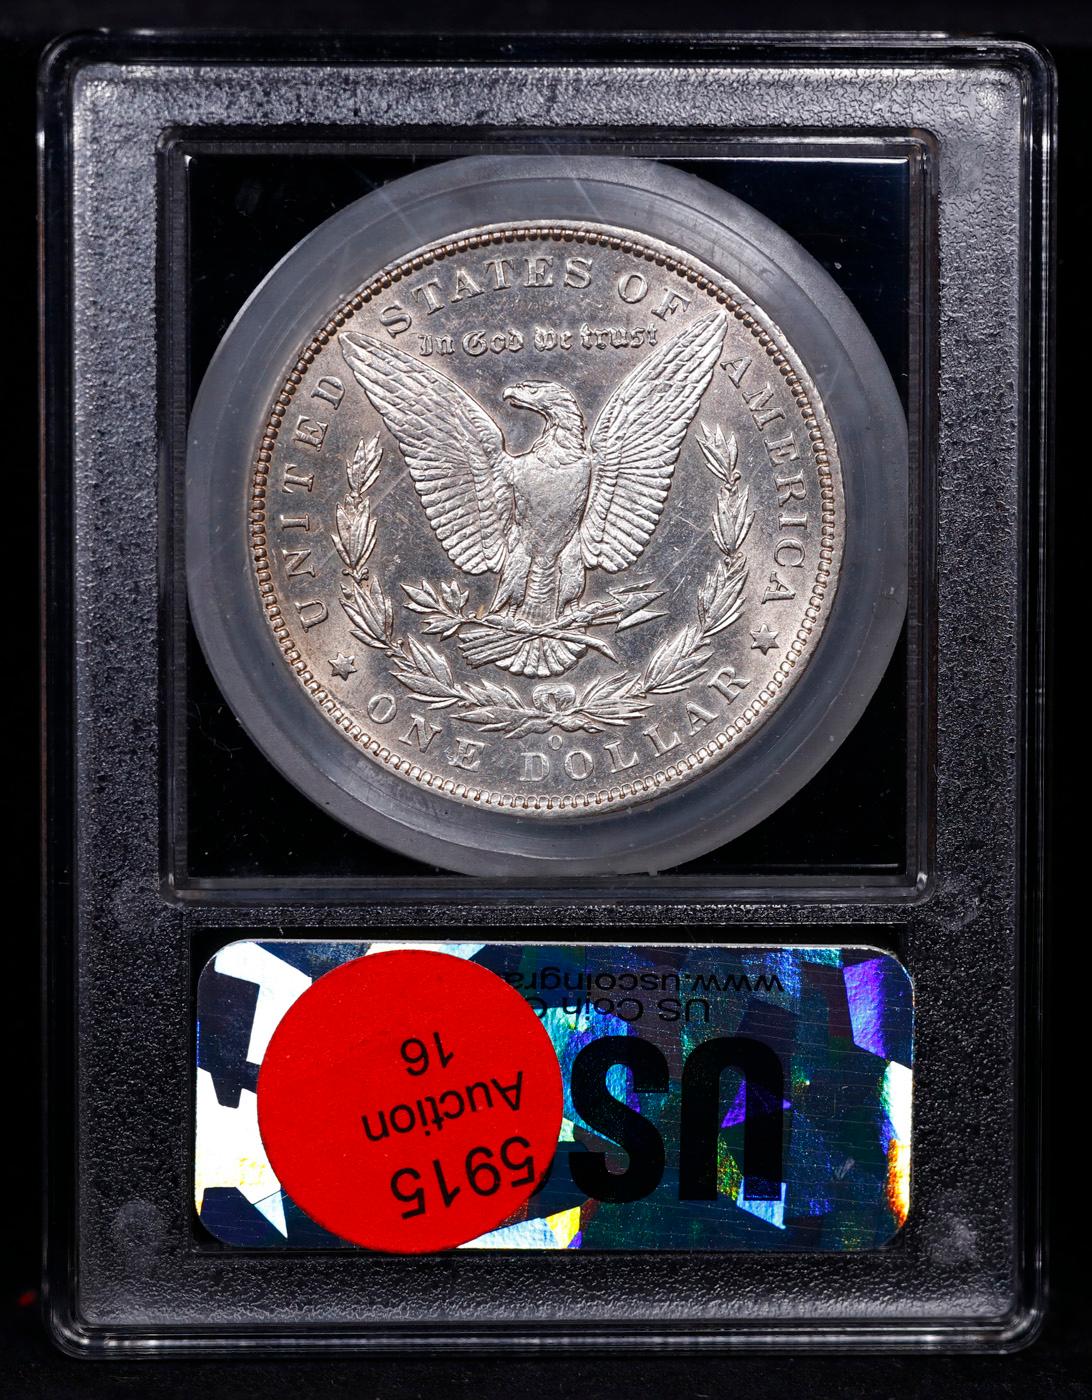 ***Auction Highlight*** 1894-o Morgan Dollar $1 Graded Choice Unc By USCG (fc)